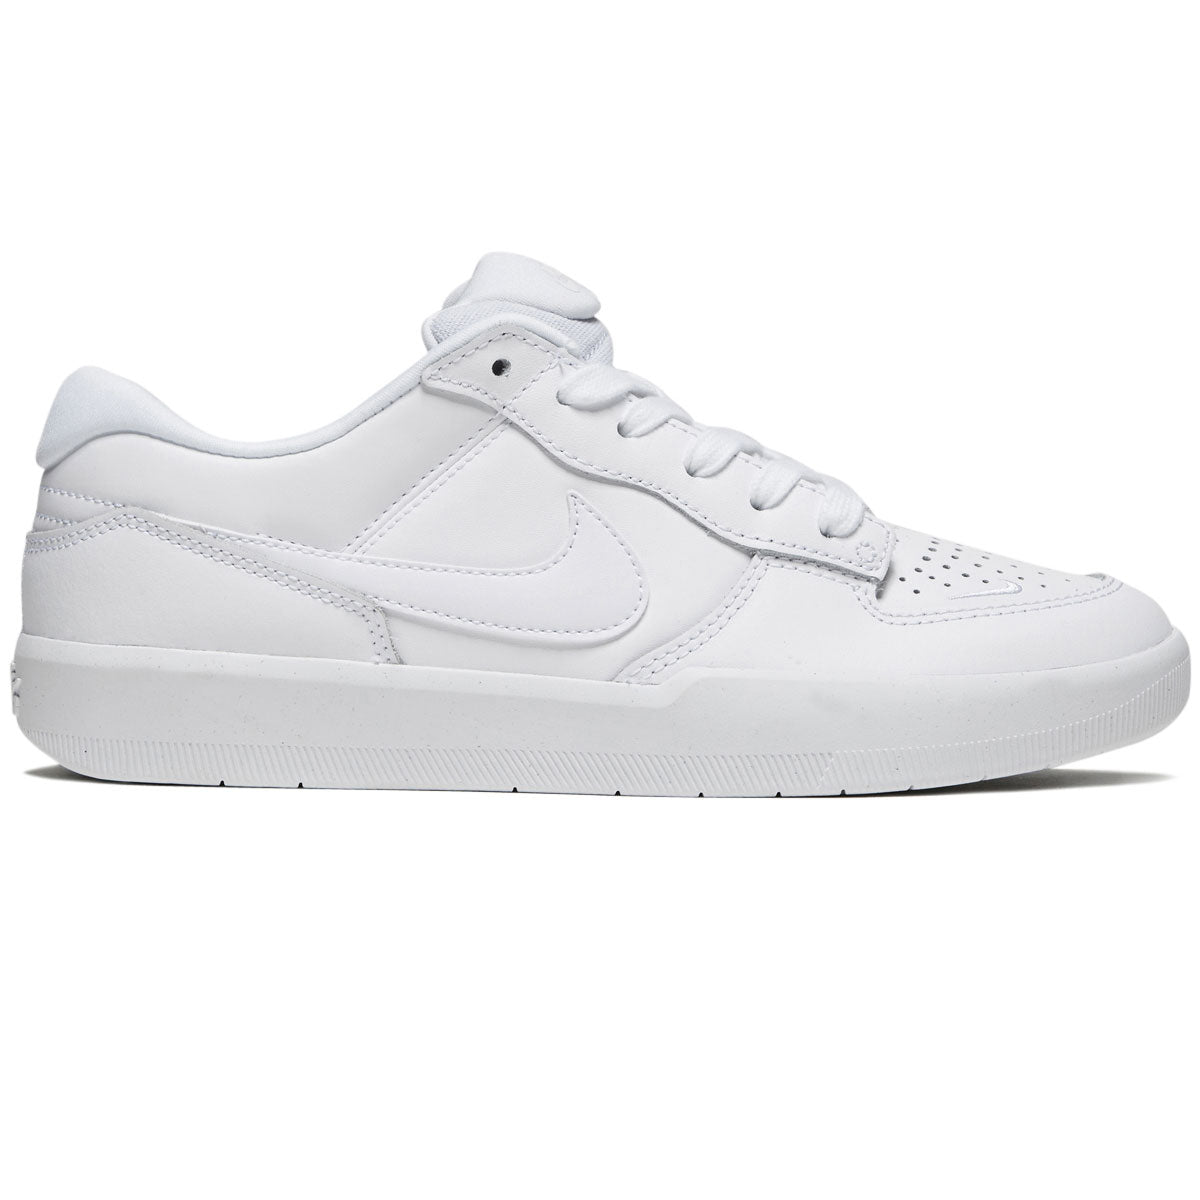 Nike SB Force 58 Premium Leather Shoes - White/White/White/White